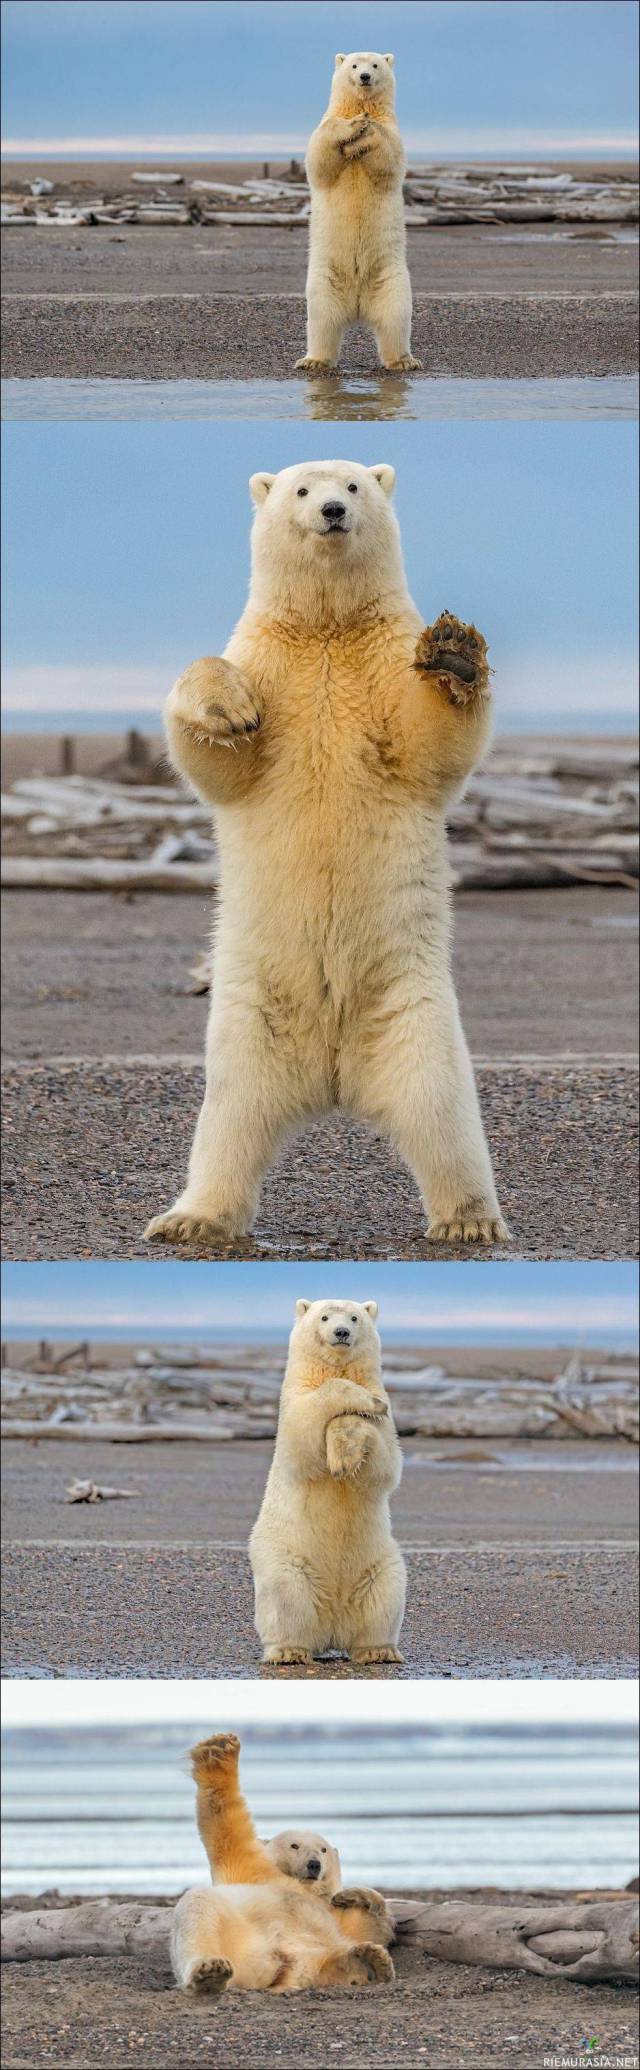 Jääkarhu vilkuttaa